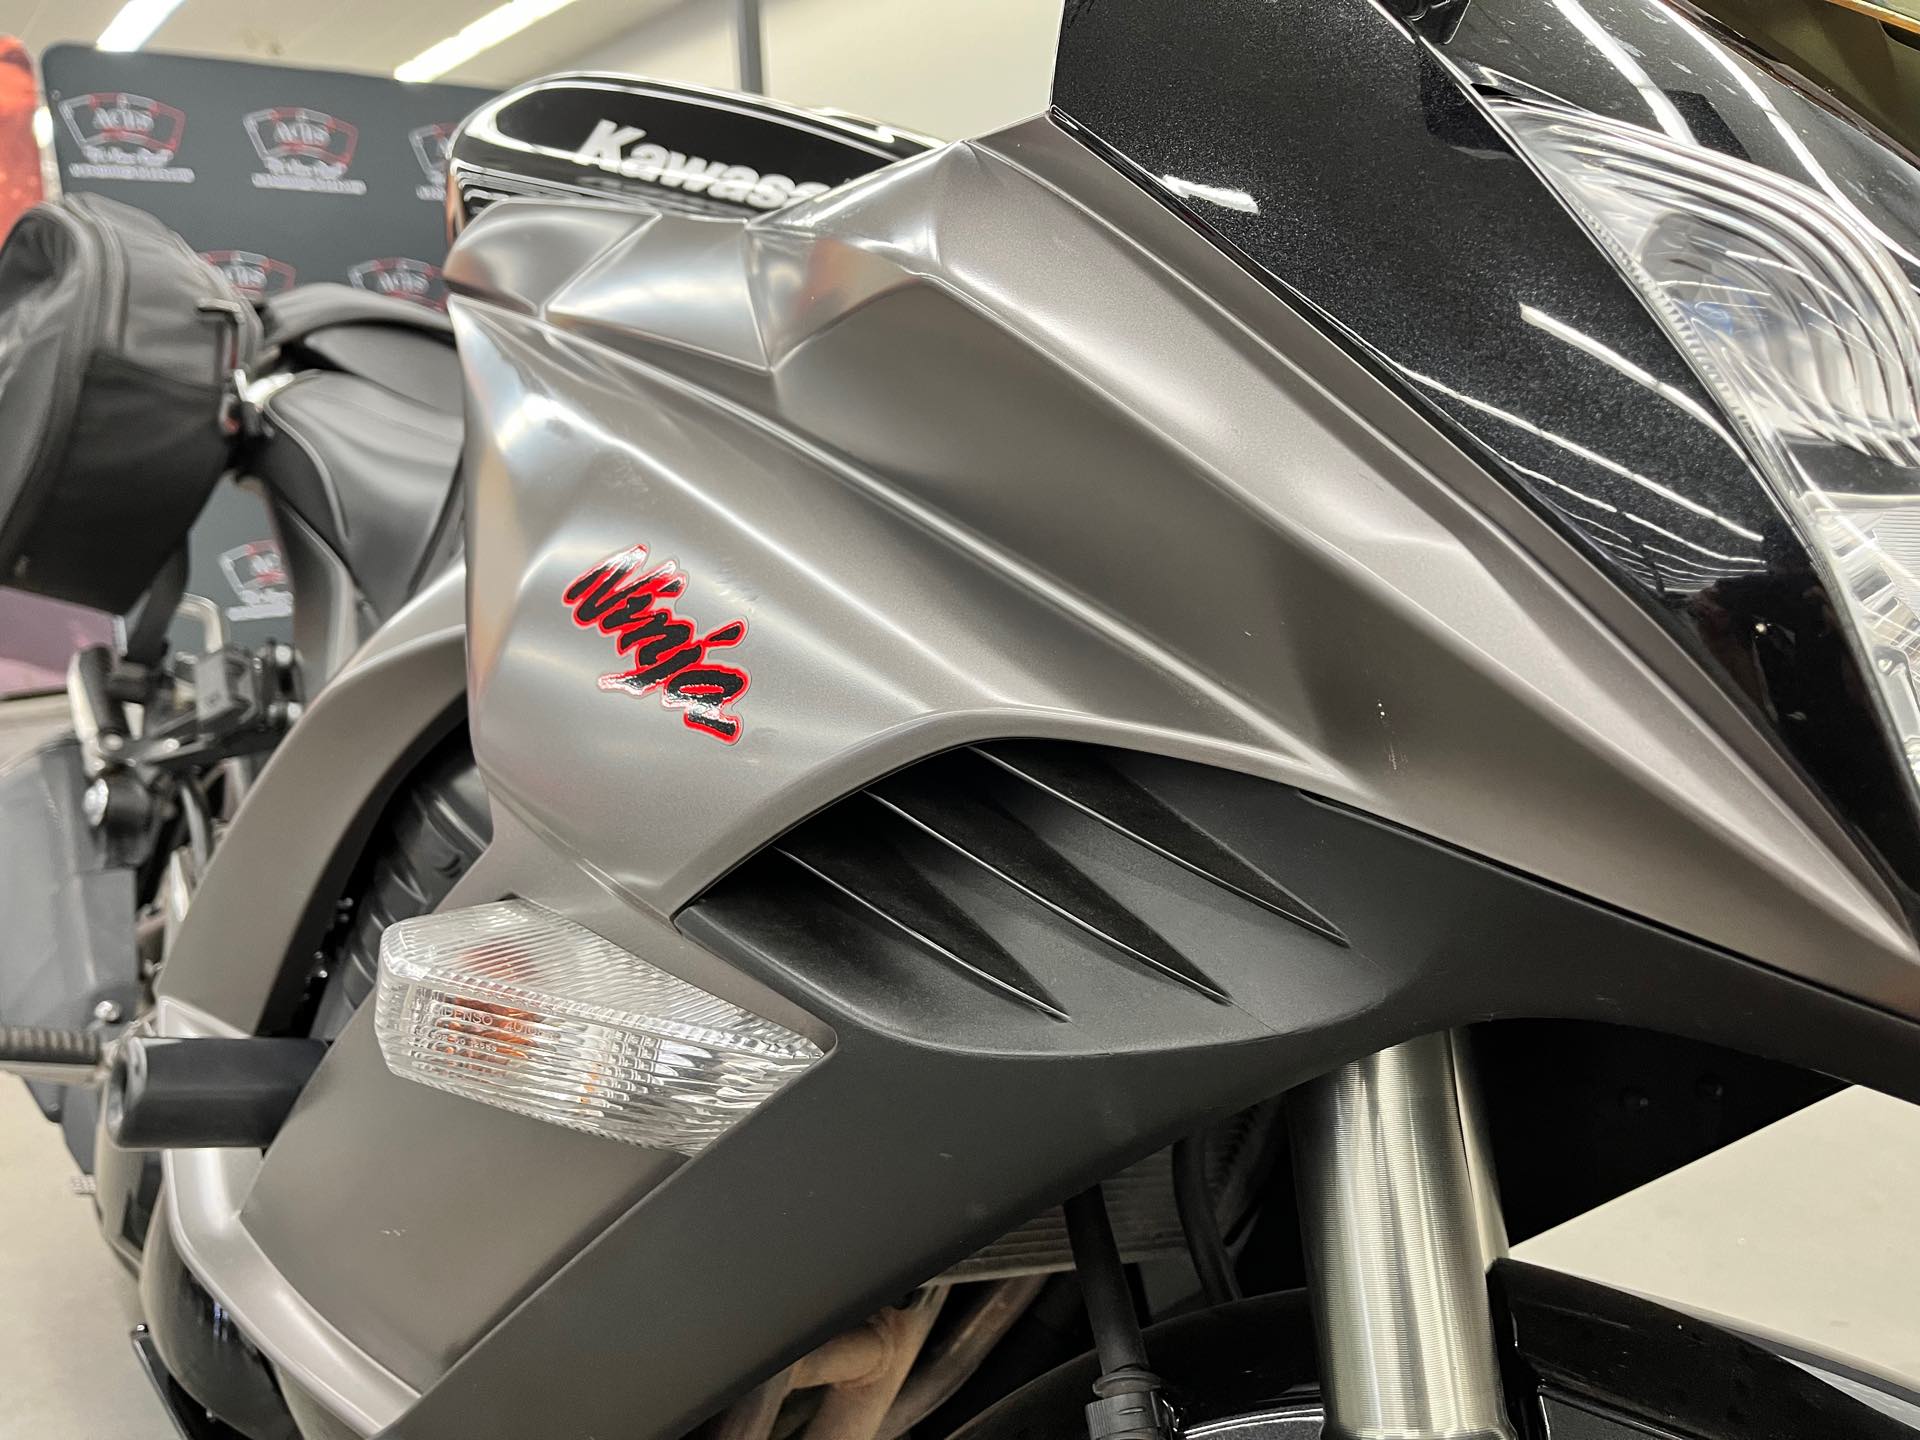 2012 Kawasaki Ninja 1000 at Aces Motorcycles - Denver